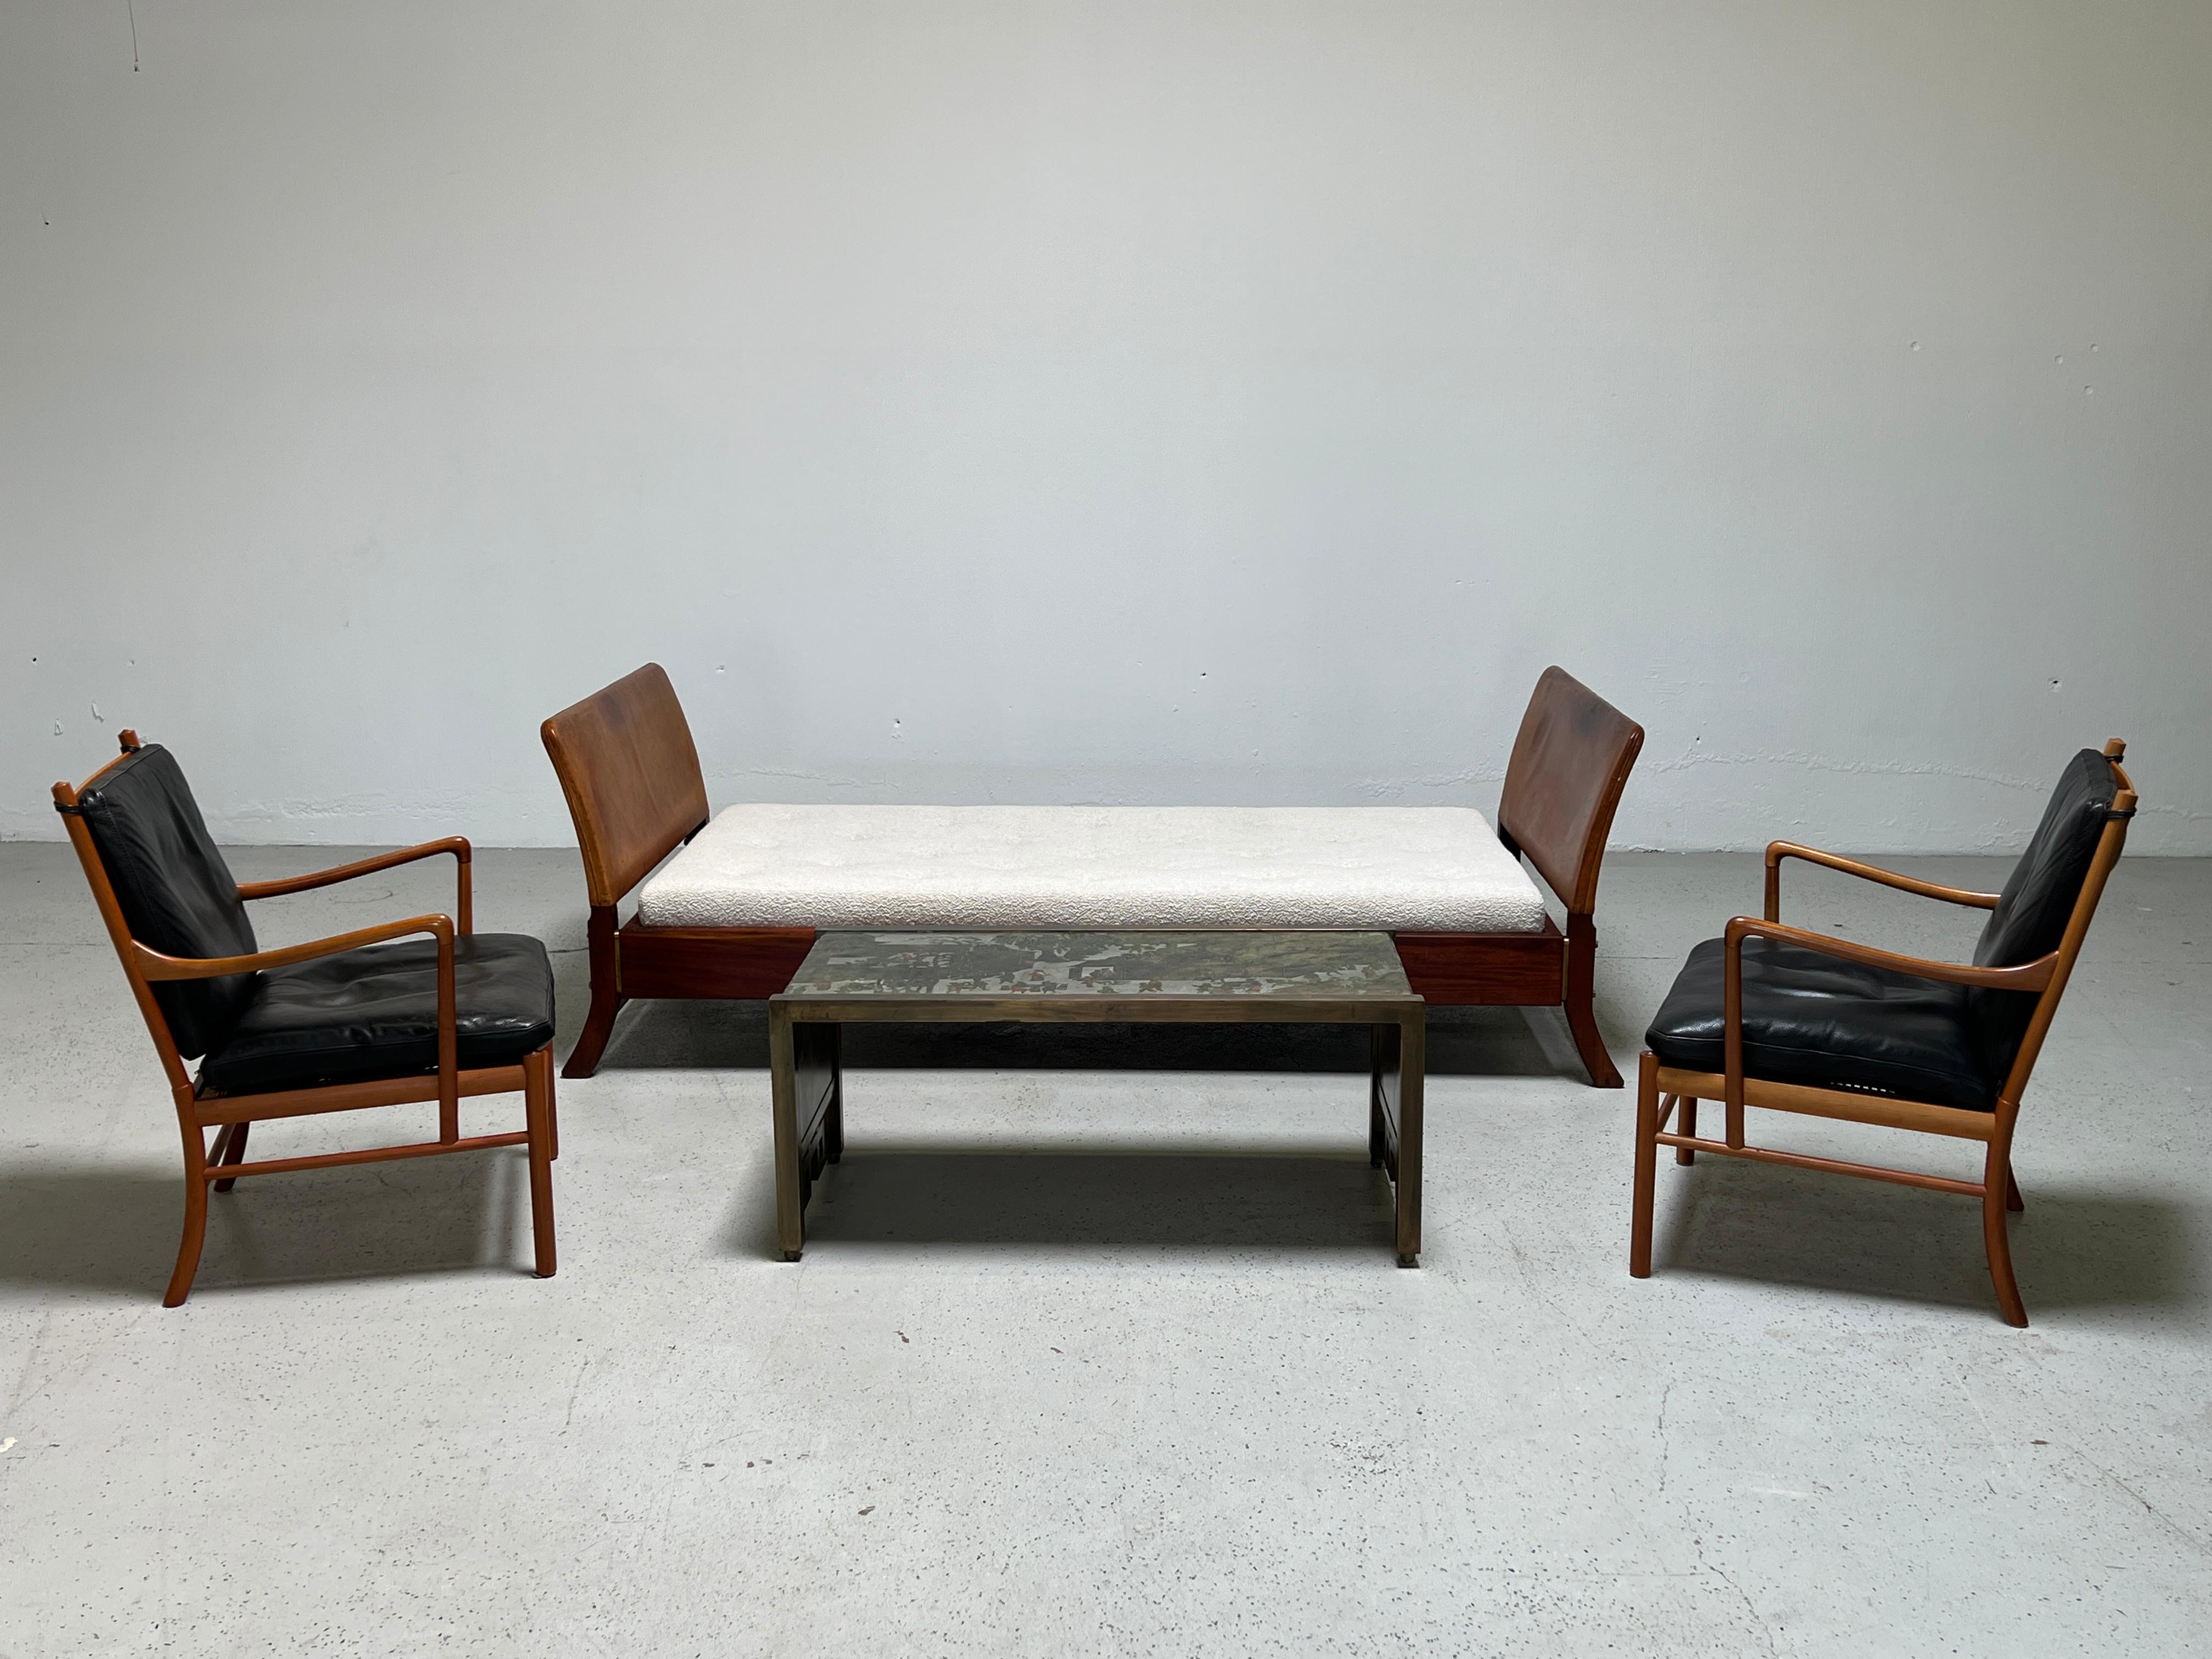 Une paire de chaises longues Coloni en acajou et cuir et un ottoman conçus par Ole Wanscher pour Paul Jeppeson.